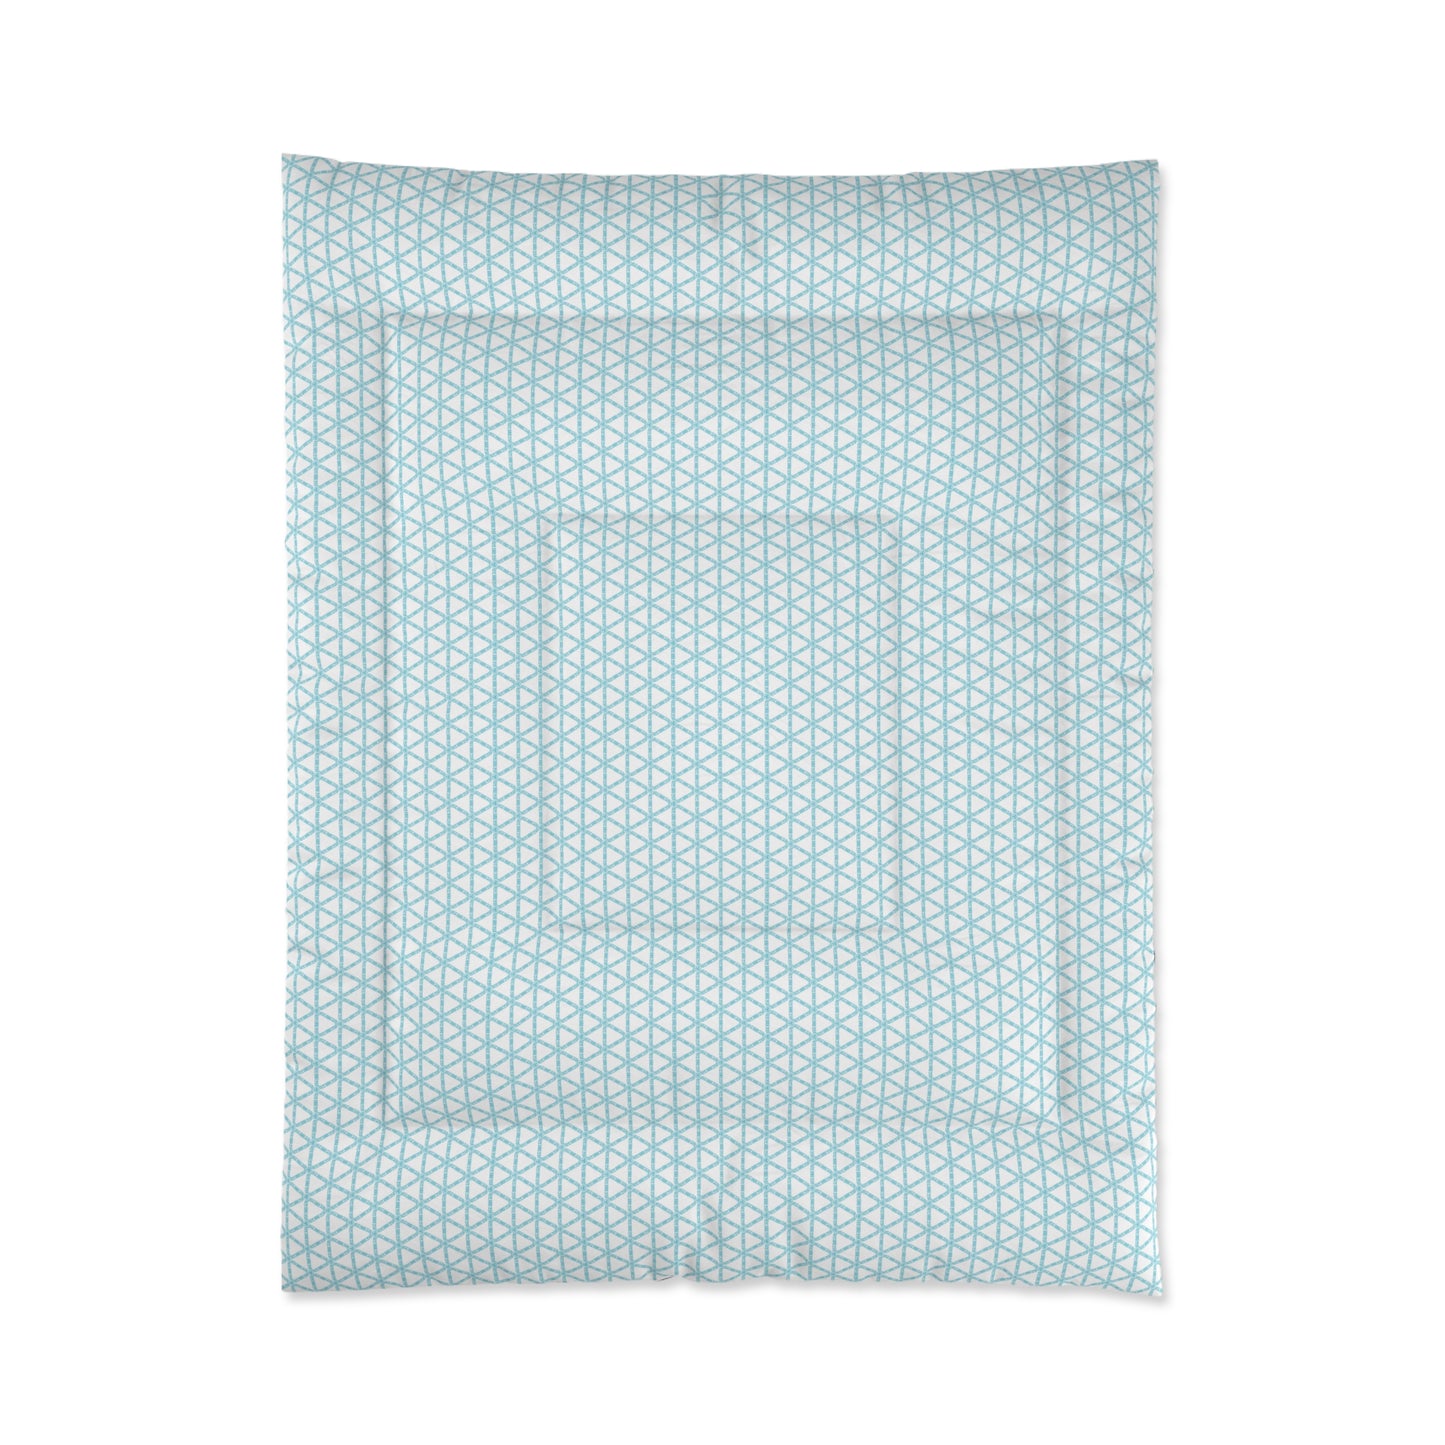 Turquoise Lattice Comforter